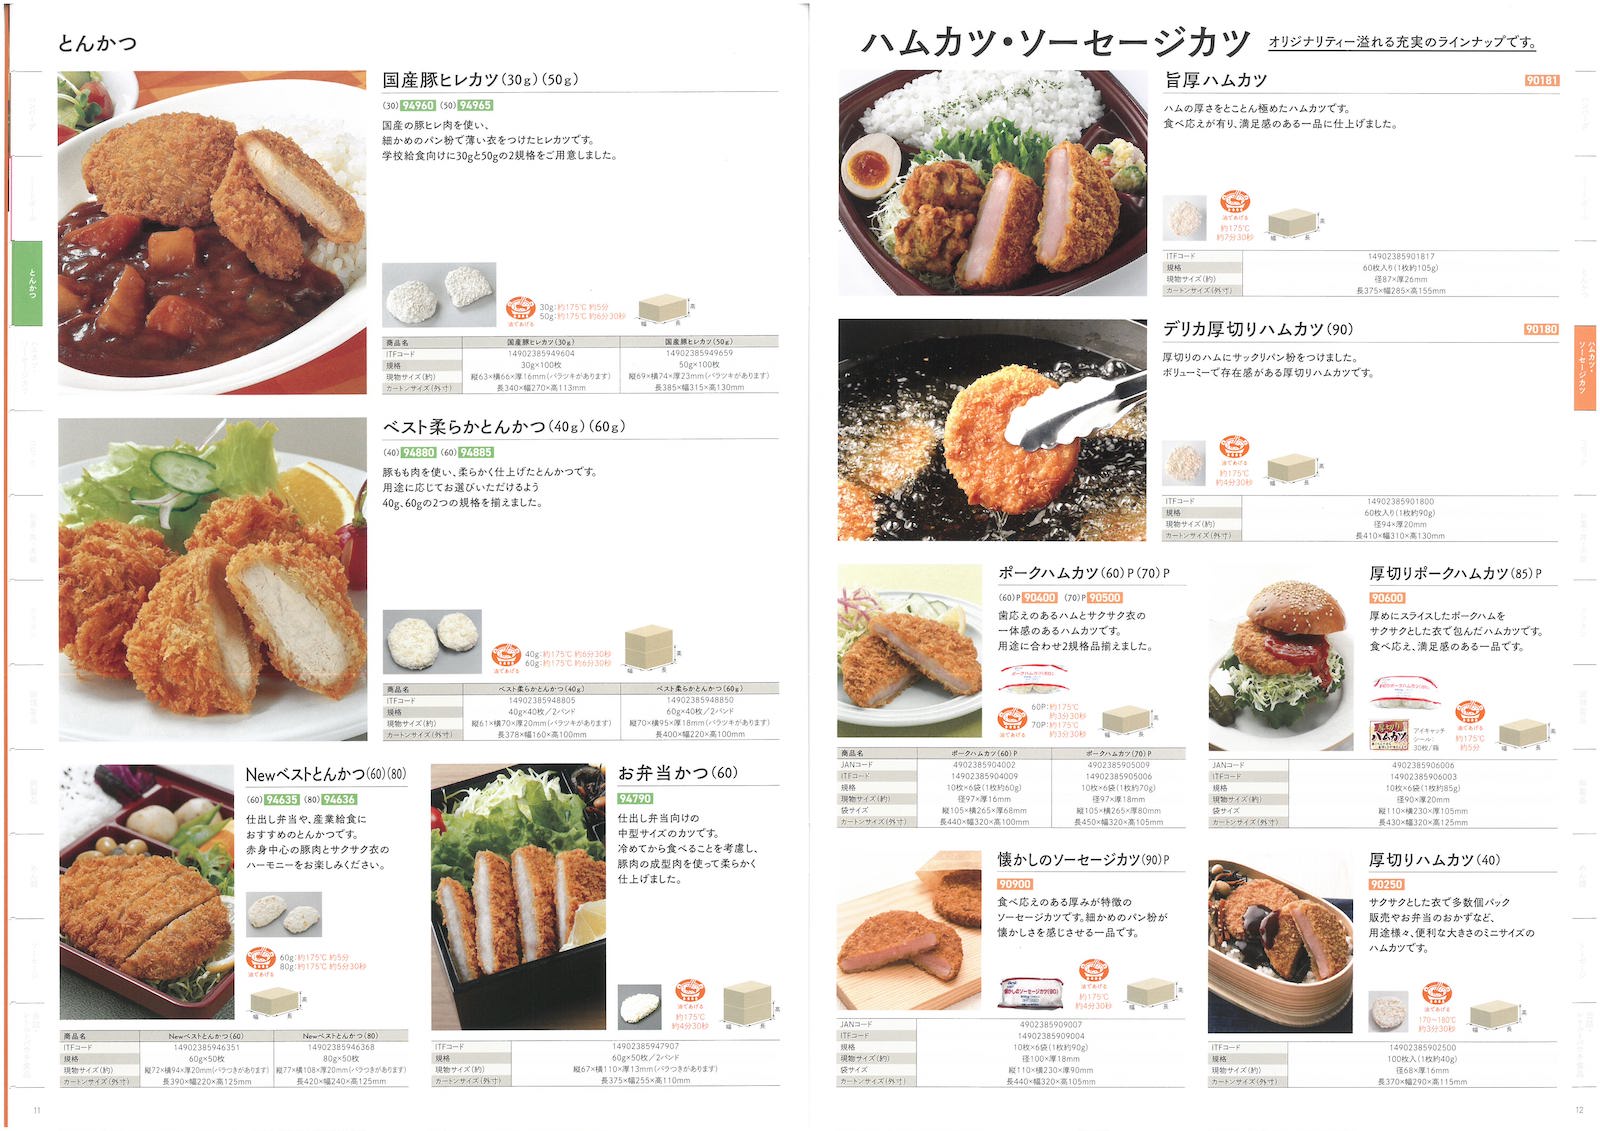 日東ベスト2022業務用食品総合カタログ Best Selection